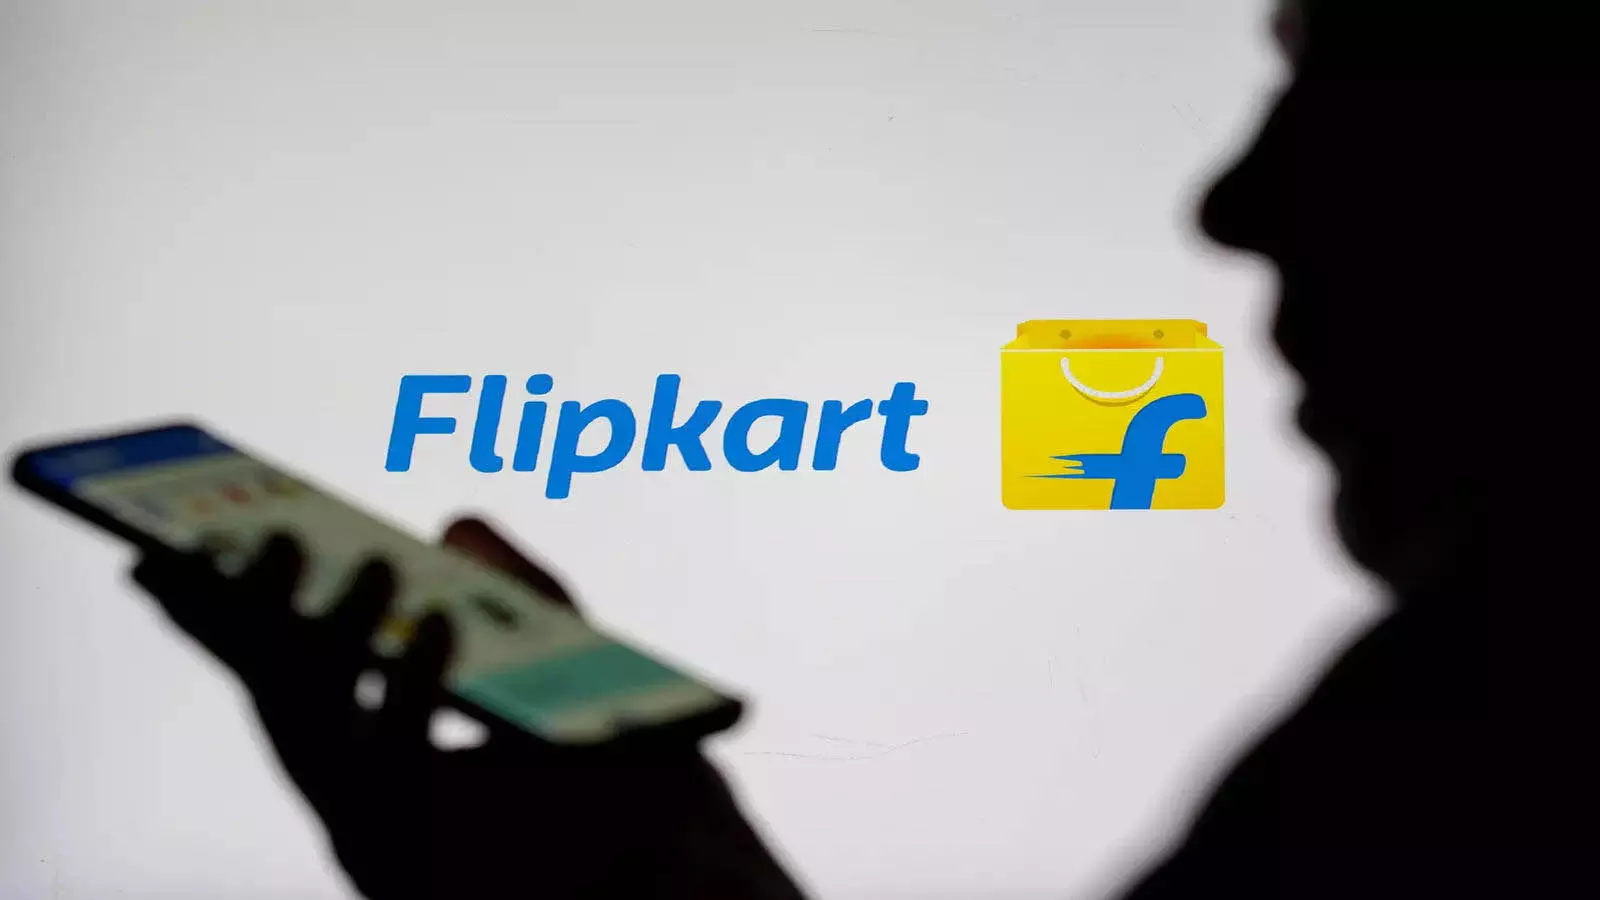 Flipkart: अब झट से आपके घर  सामान पहुंचाएगा Flipkart ,.शॉपिंग करने में आसानी